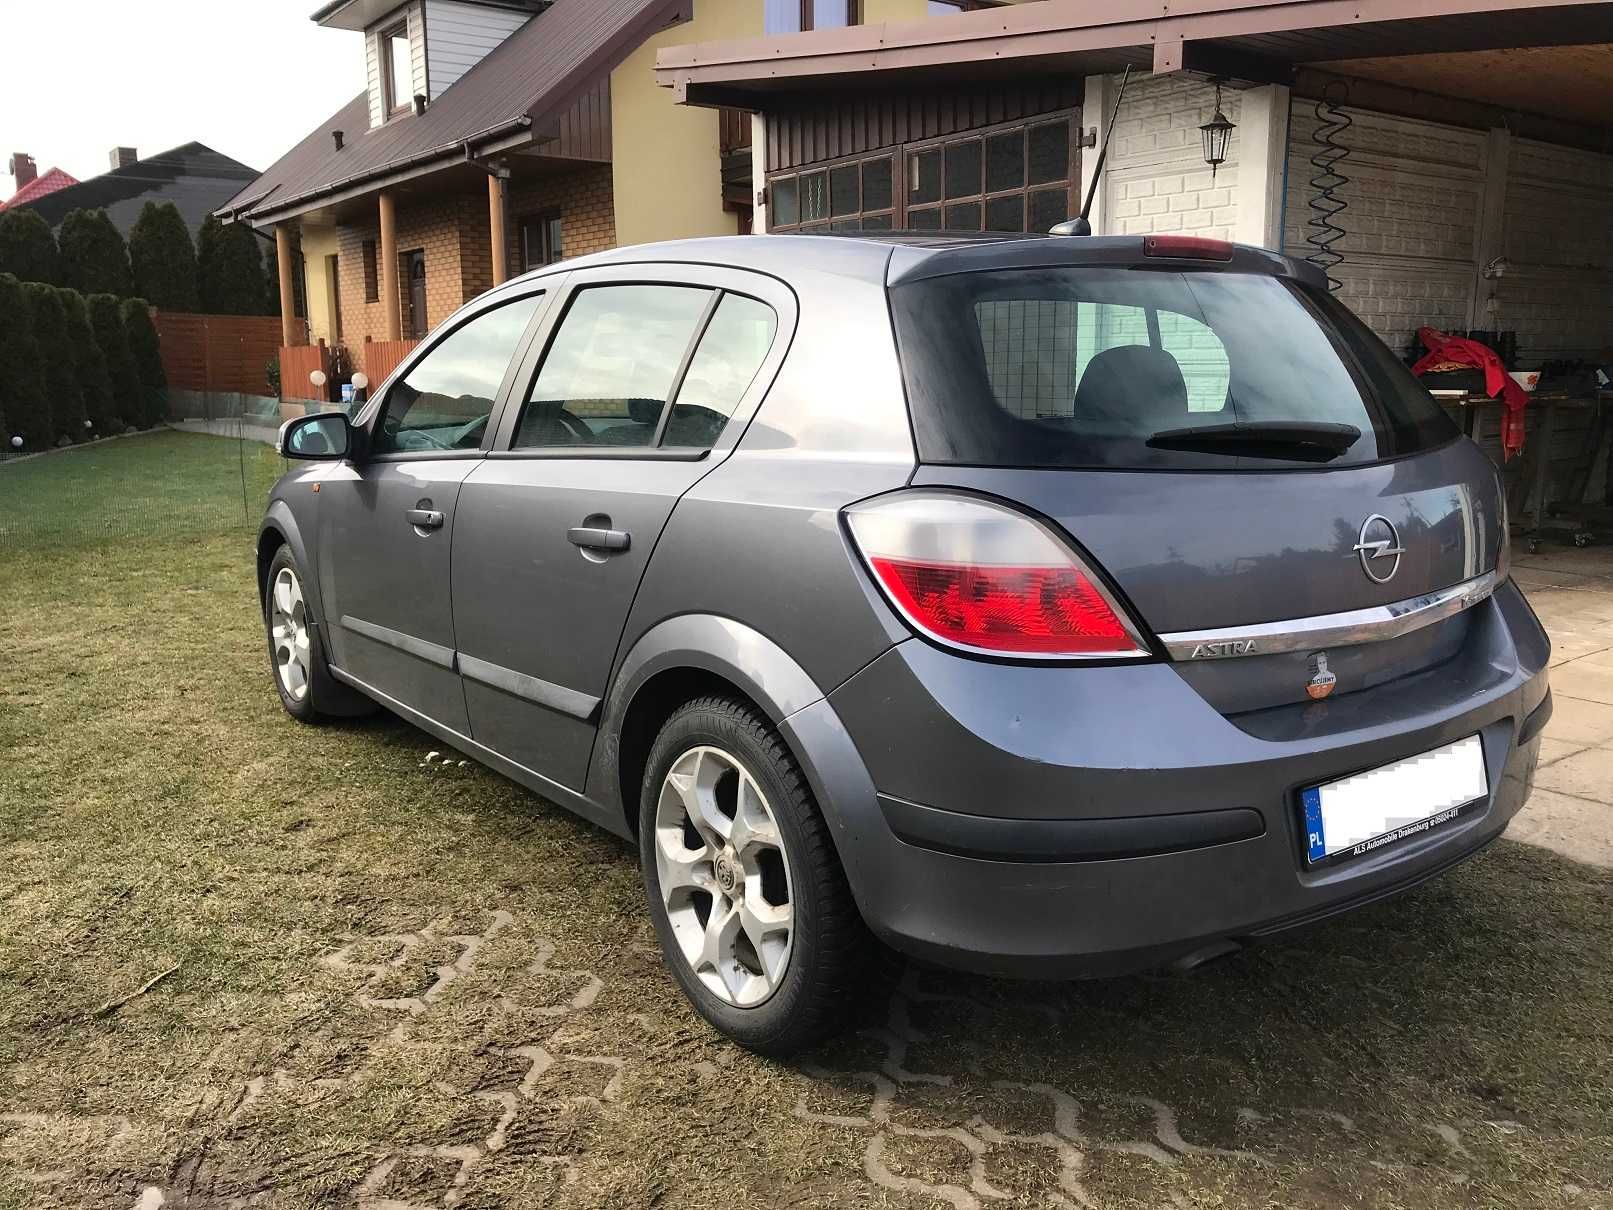 Opel Astra III 1.6 LPG, spalanie 8l gazu /100km